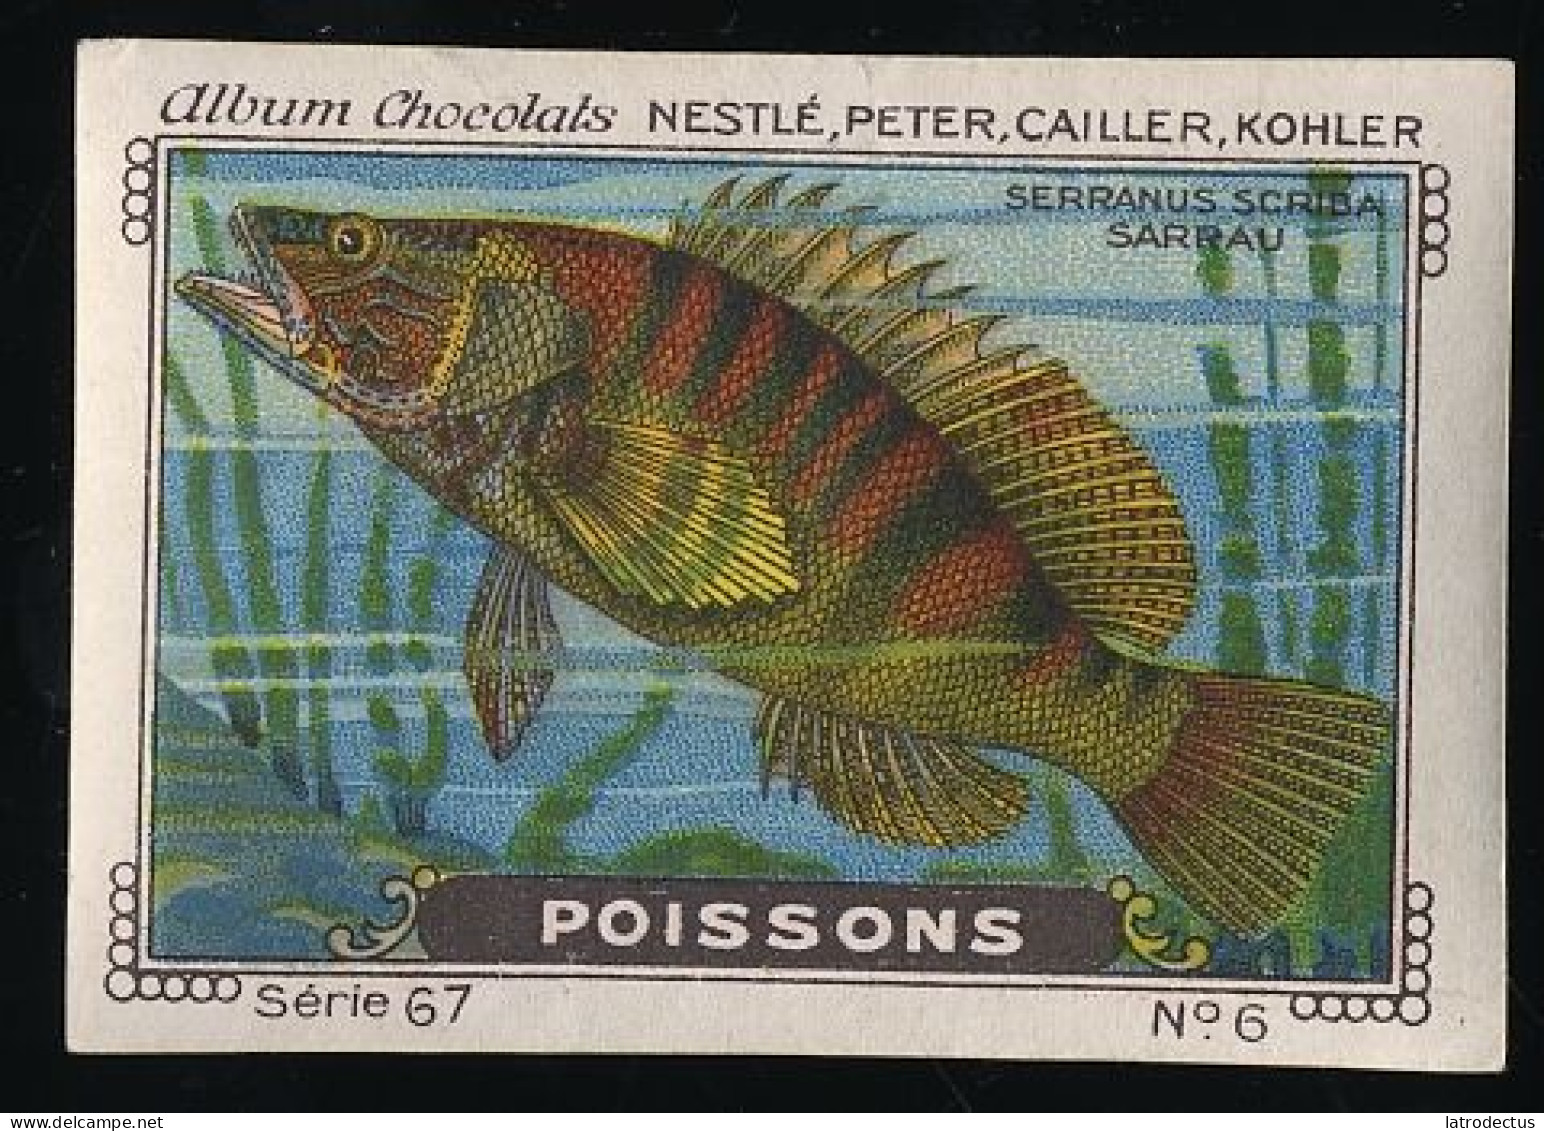 Nestlé - 67 - Poissons, Fish - 6 - Sarrau - Nestlé